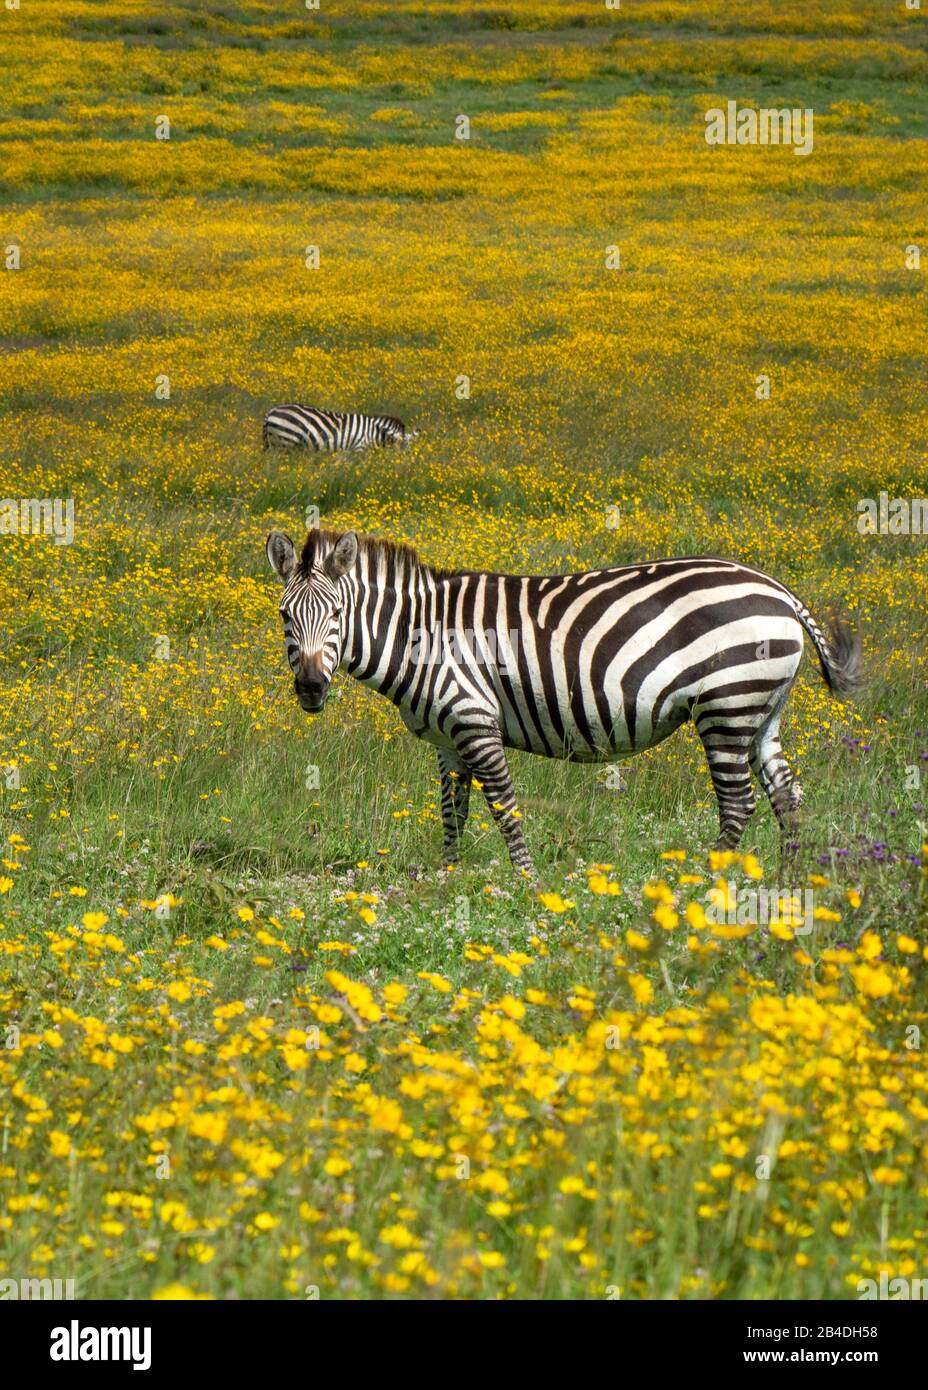 Tanzania, Northern Tanzania, Serengeti National Park, Ngorongoro Crater, Tarangire, Arusha and Lake Manyara, zebra among yellow flowers, Equus quagga Stock Photo